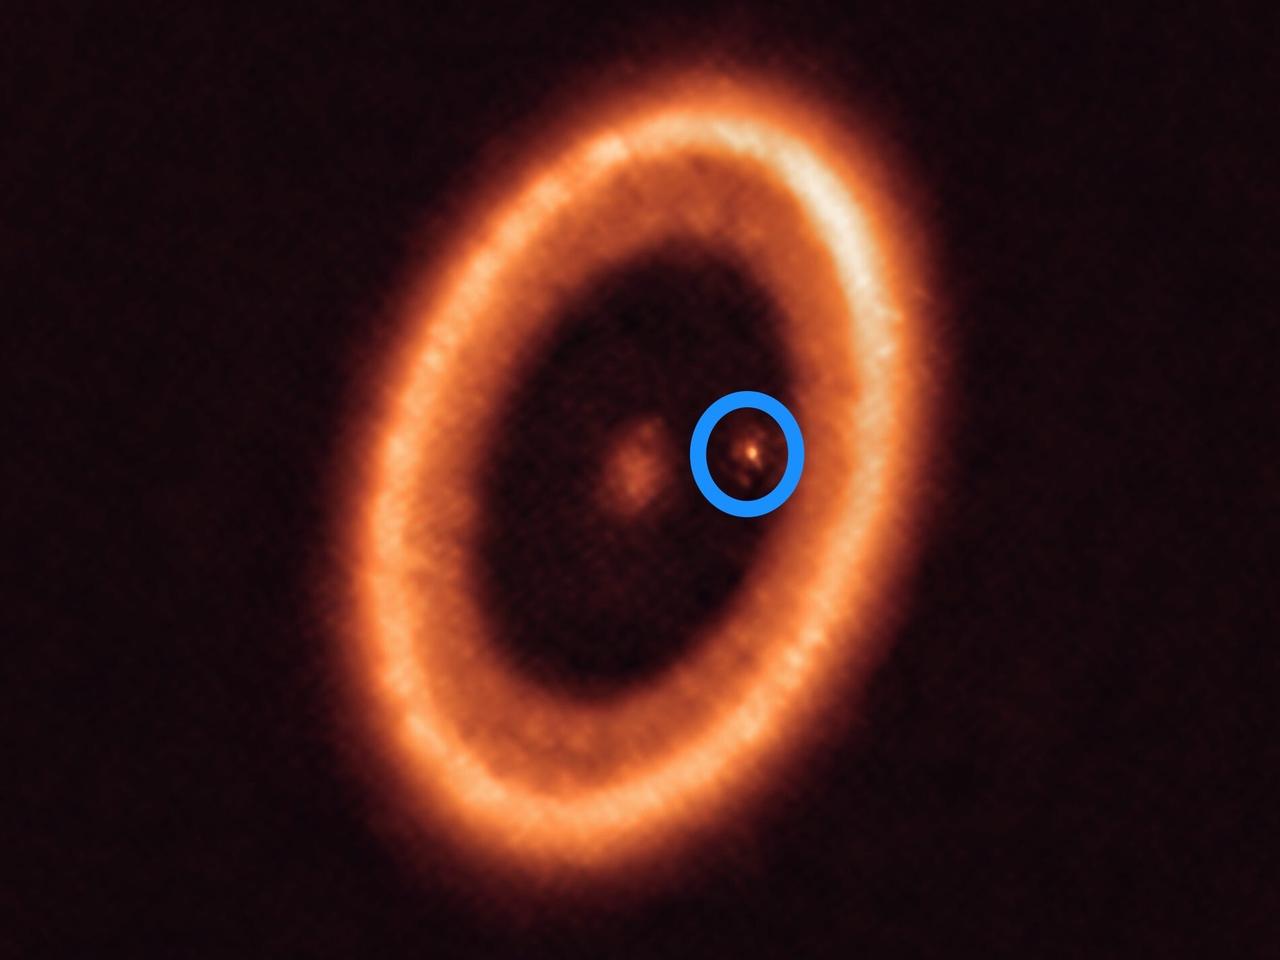 ｢PDS 70星系｣は、地球から約400光年離れた距離にあり、形成の途上にある。大きなリングの中心にあるのが恒星｢PDS 70｣で、青い円で示されているのはその惑星｢PDS 70c｣。